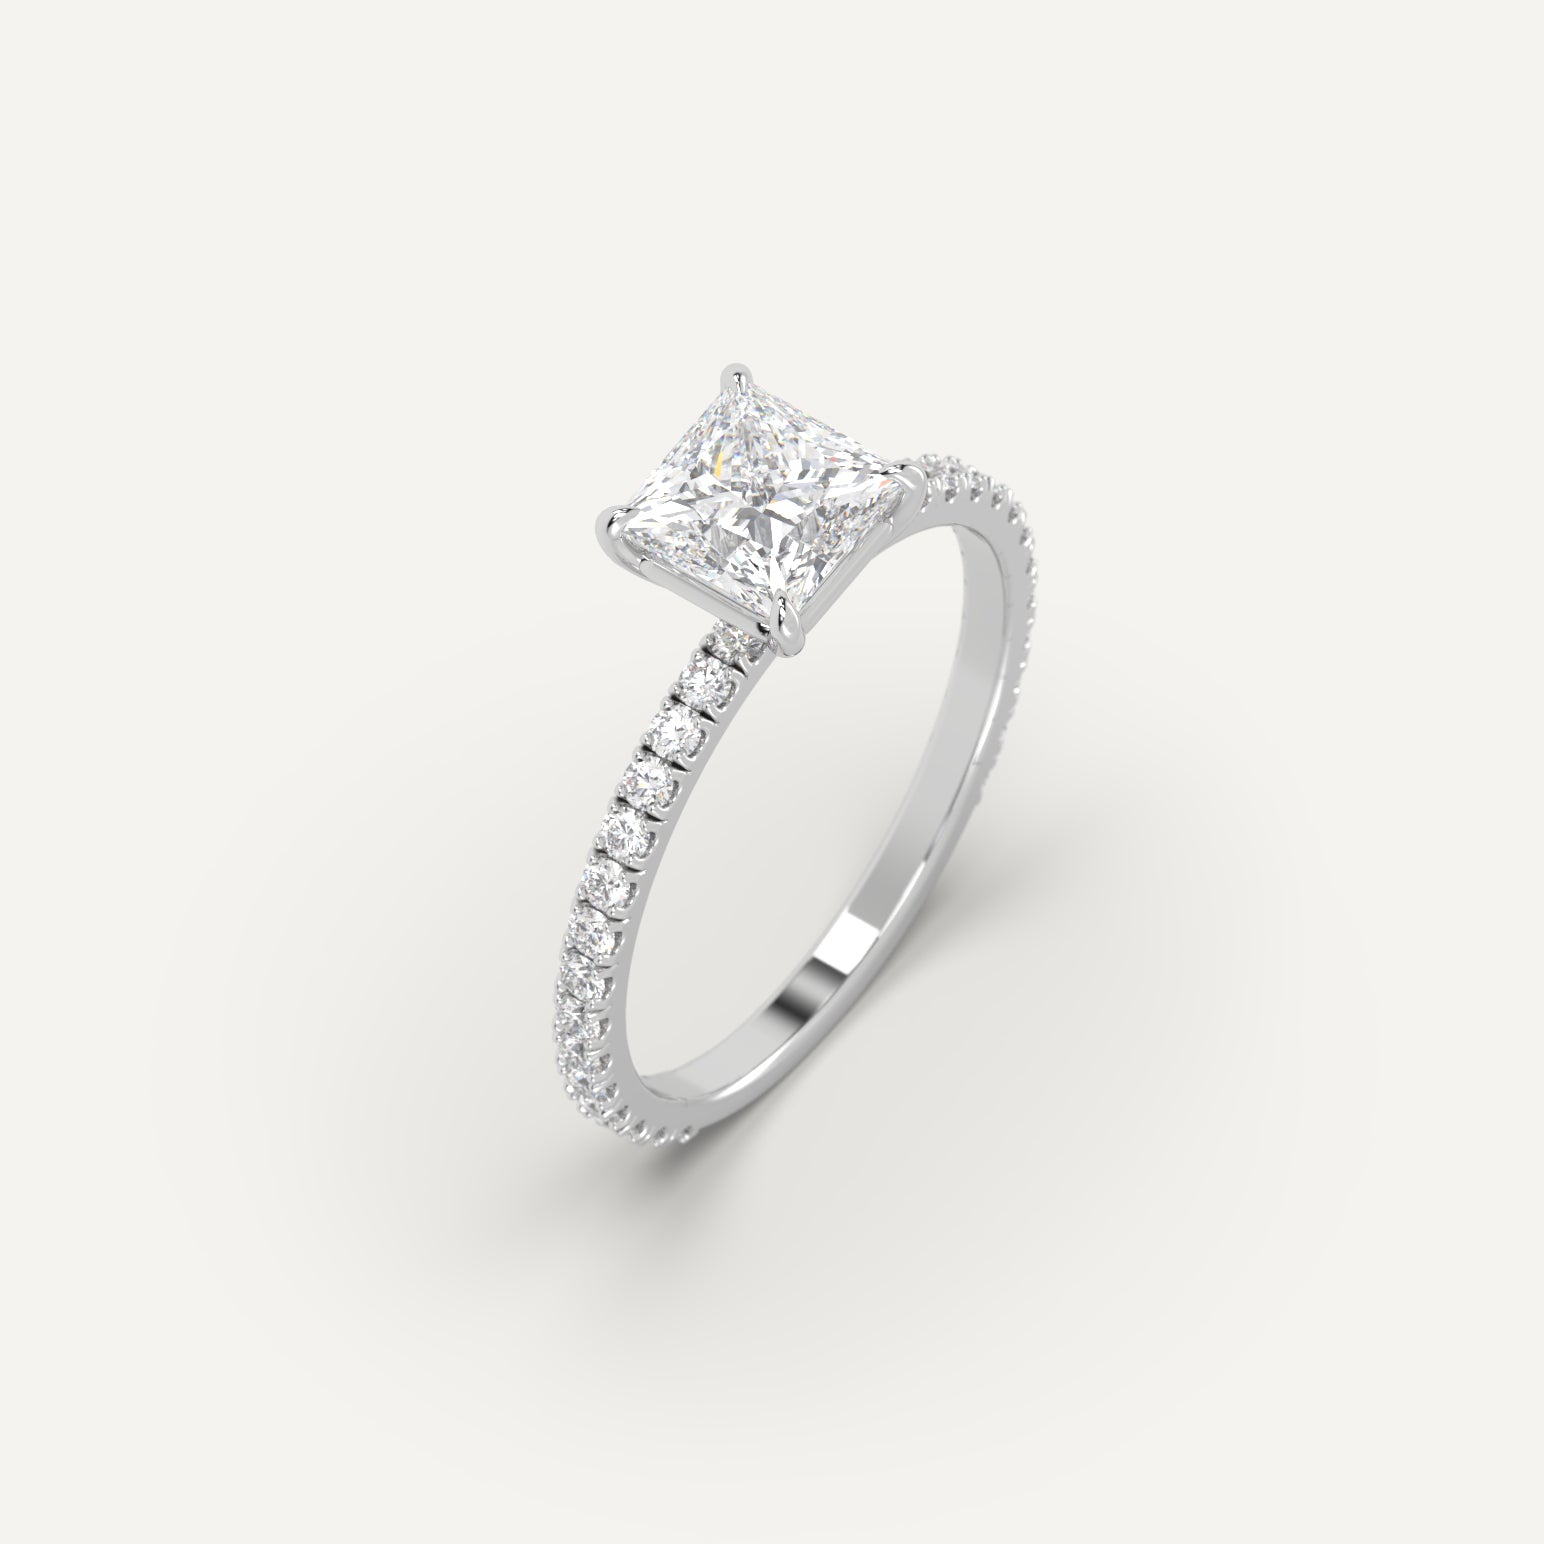 1 carat Princess Cut Engagement Ring in 14k White Gold